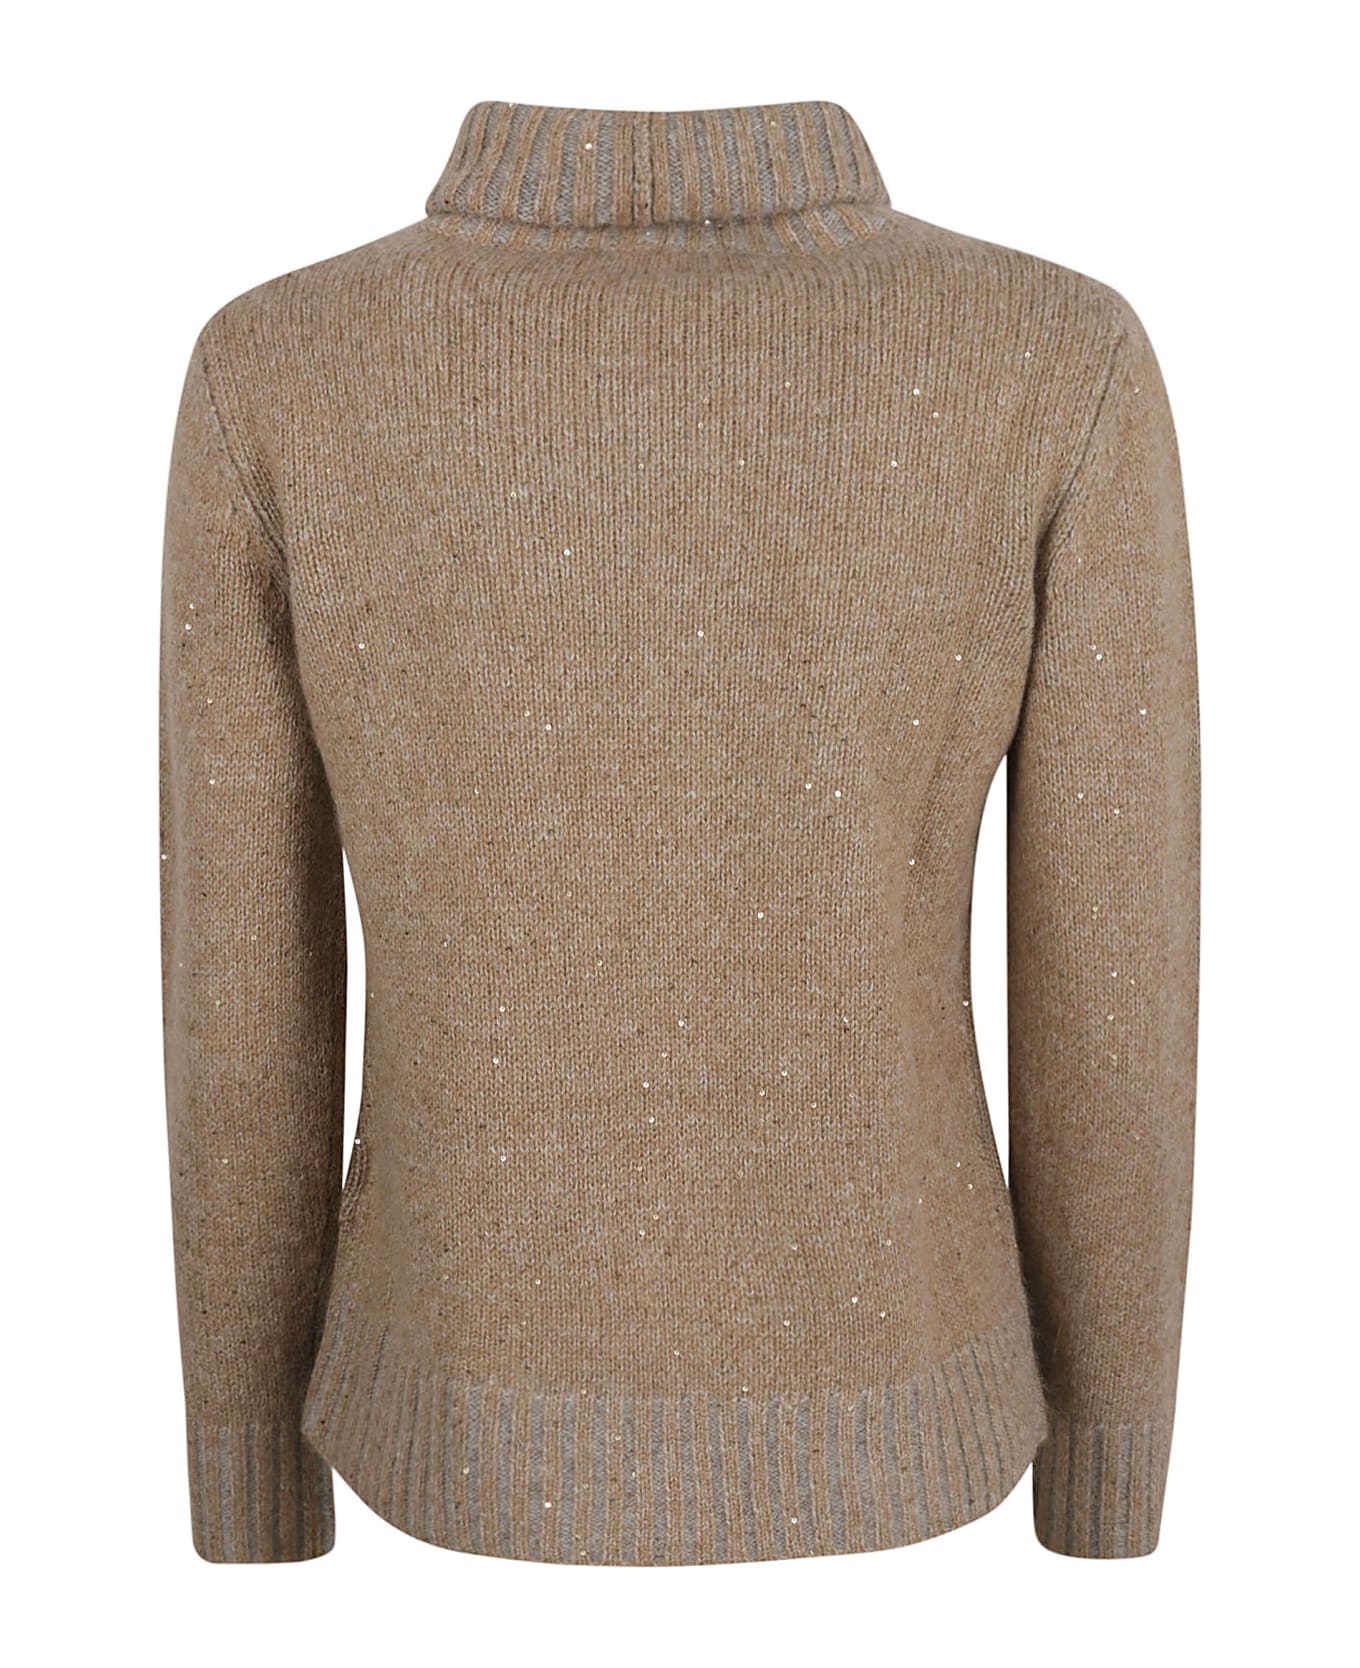 Fabiana Filippi Embellished Turtleneck Rib Sweater - Camel